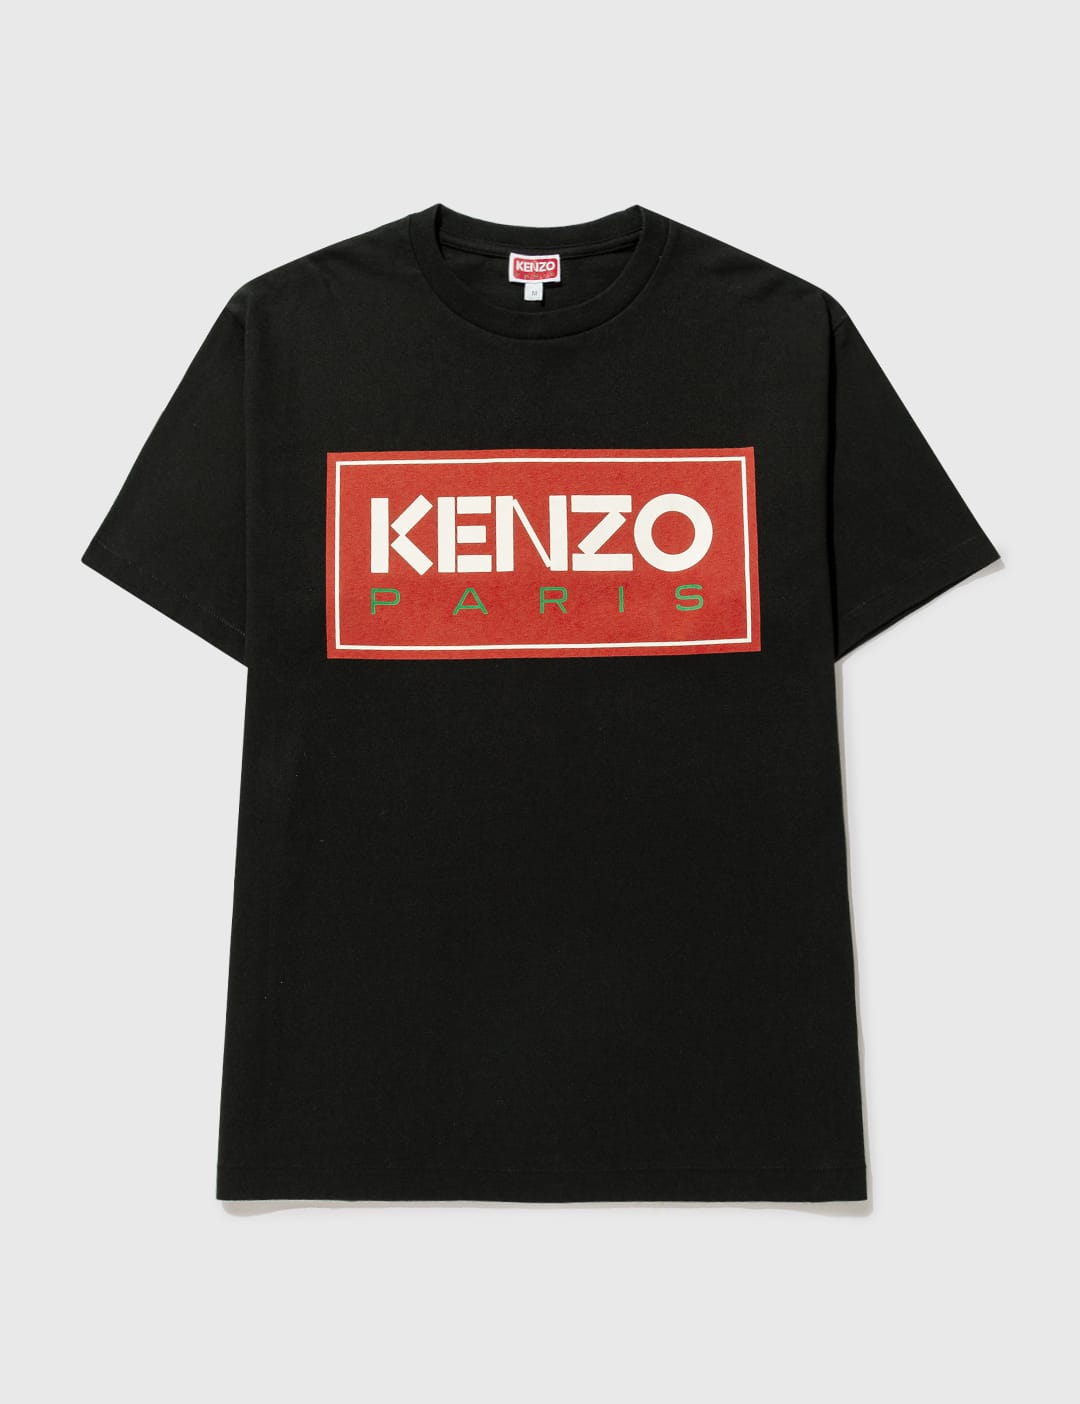 겐조 KENZO Paris T-shirt